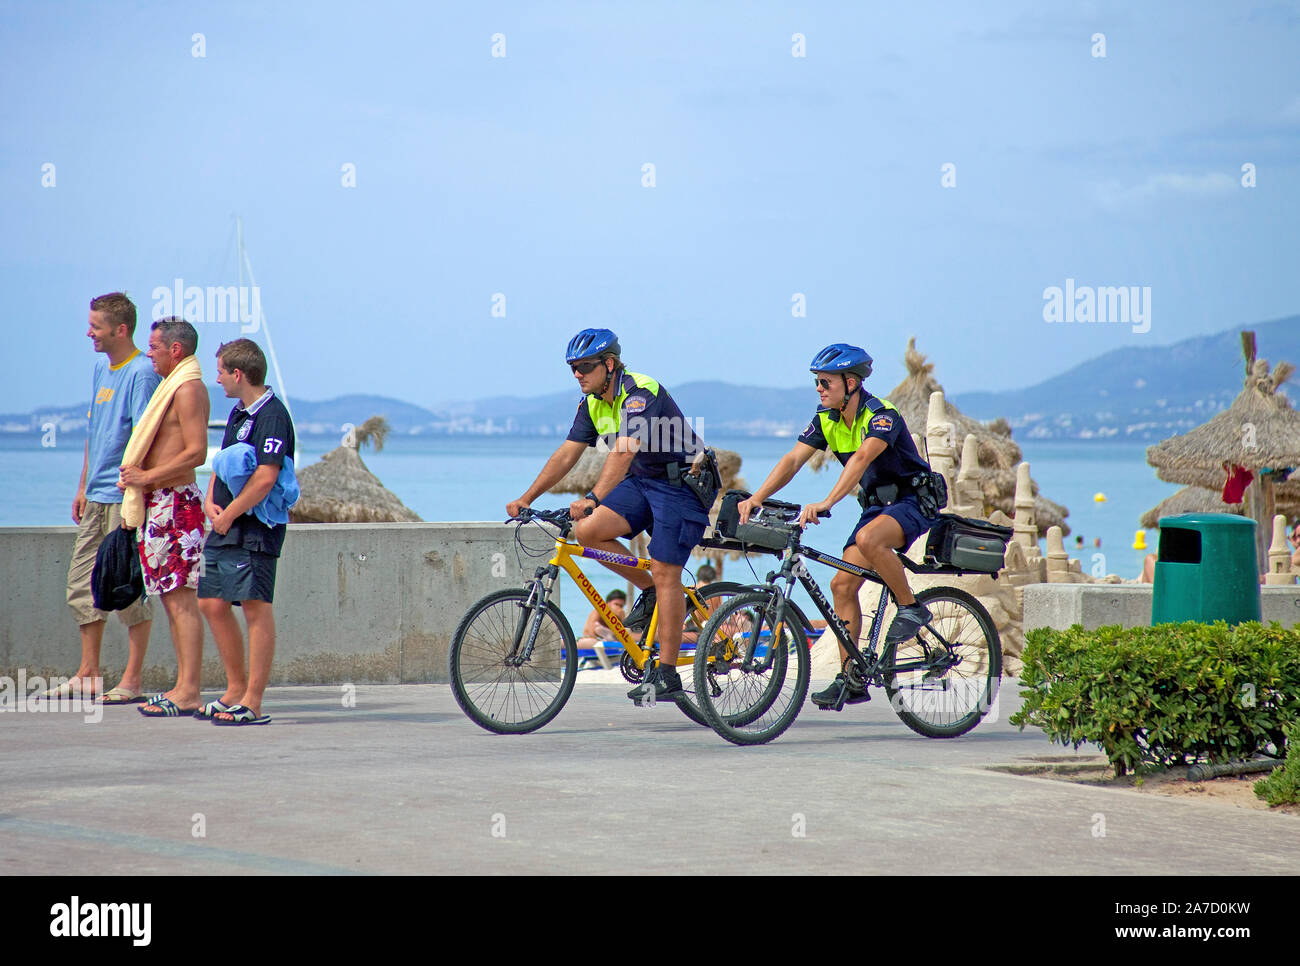 La police sur des vélos à Ballermann, Playa de Palma, El Arenal, Majorque, îles Baléares, Espagne Banque D'Images